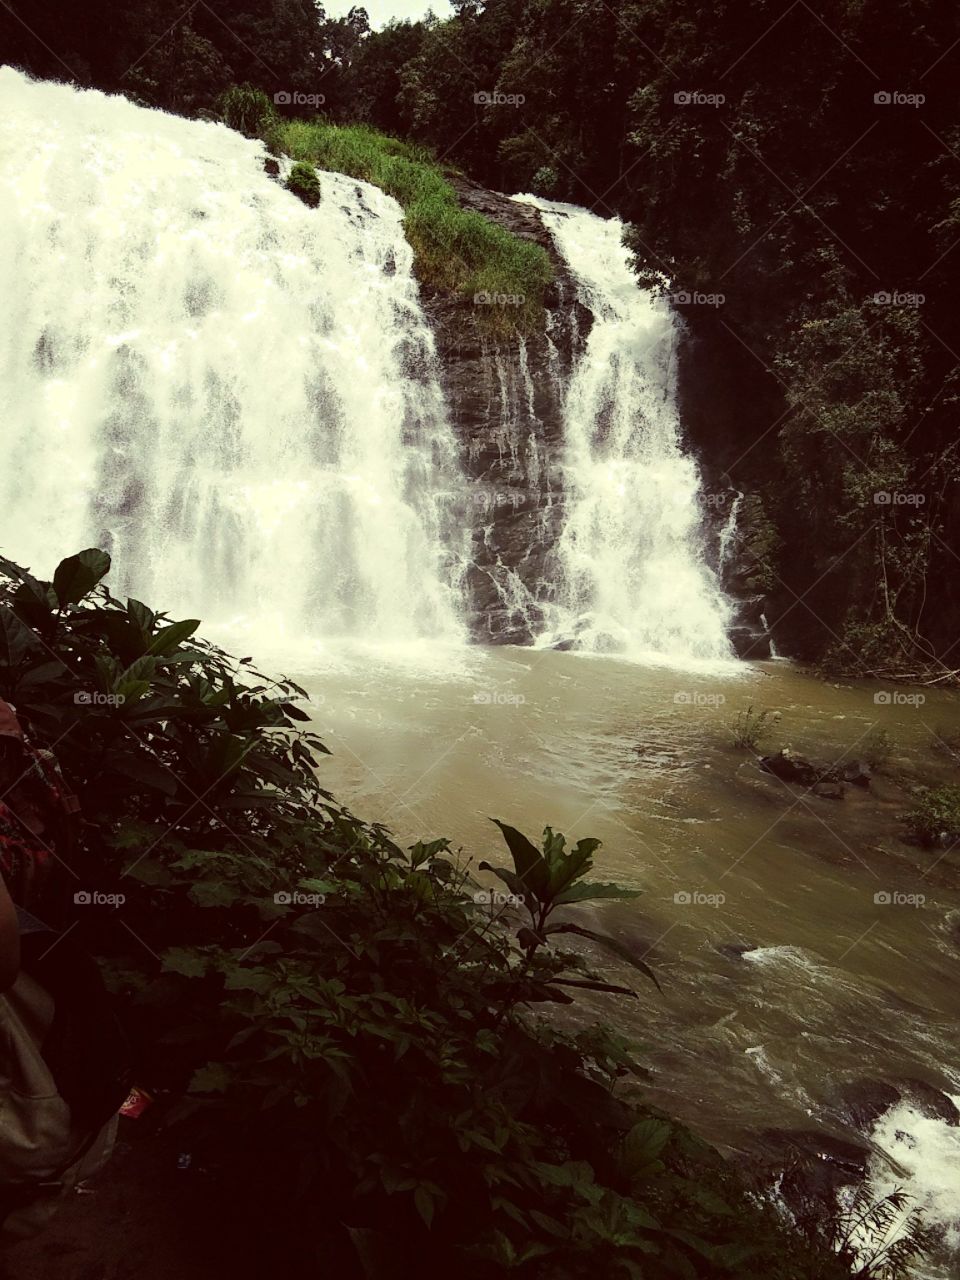 Abhai falls